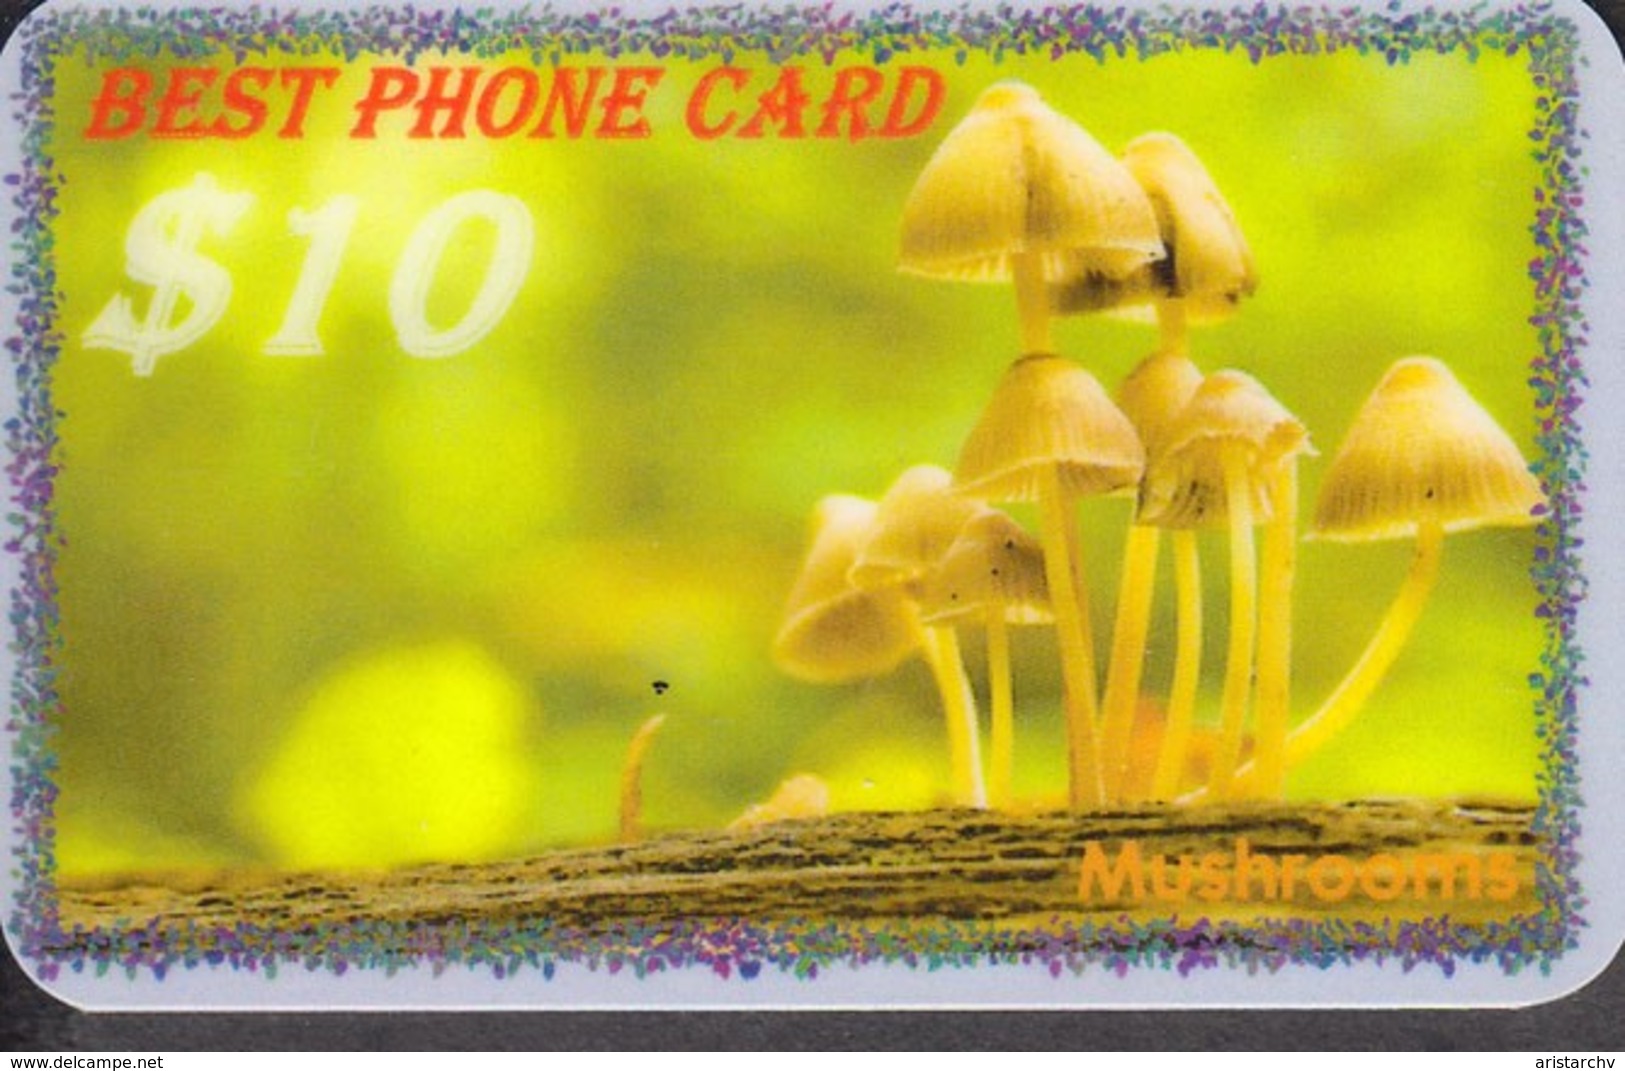 MUSHROOM SET OF 16 PHONE CARDS - Food